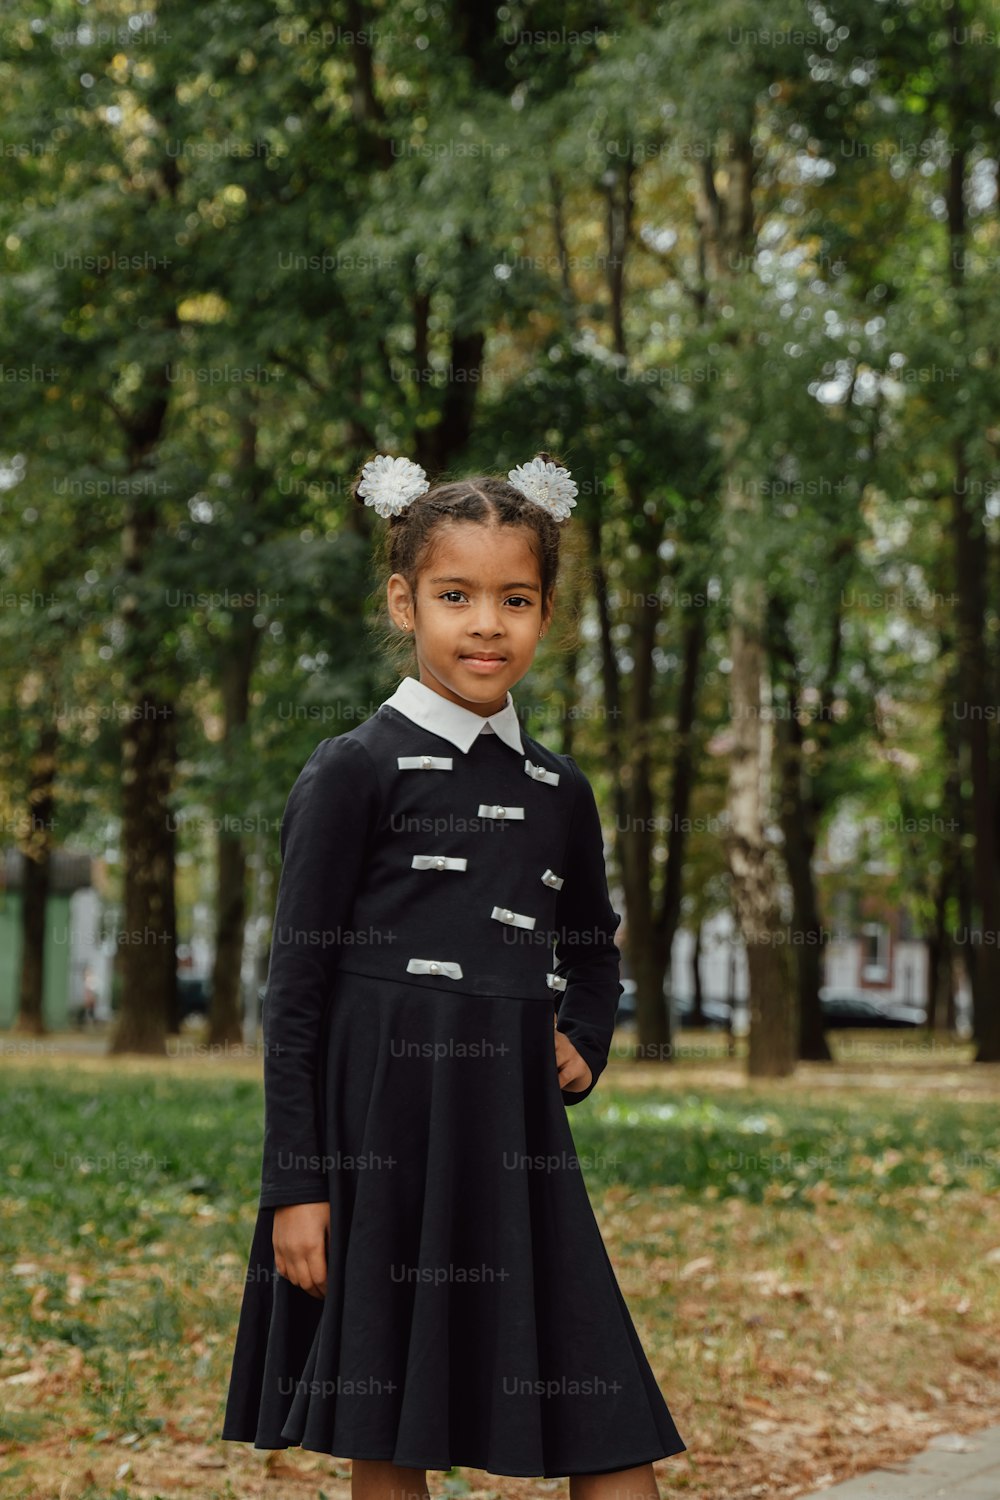 Una ragazza in un vestito nero in piedi su un marciapiede